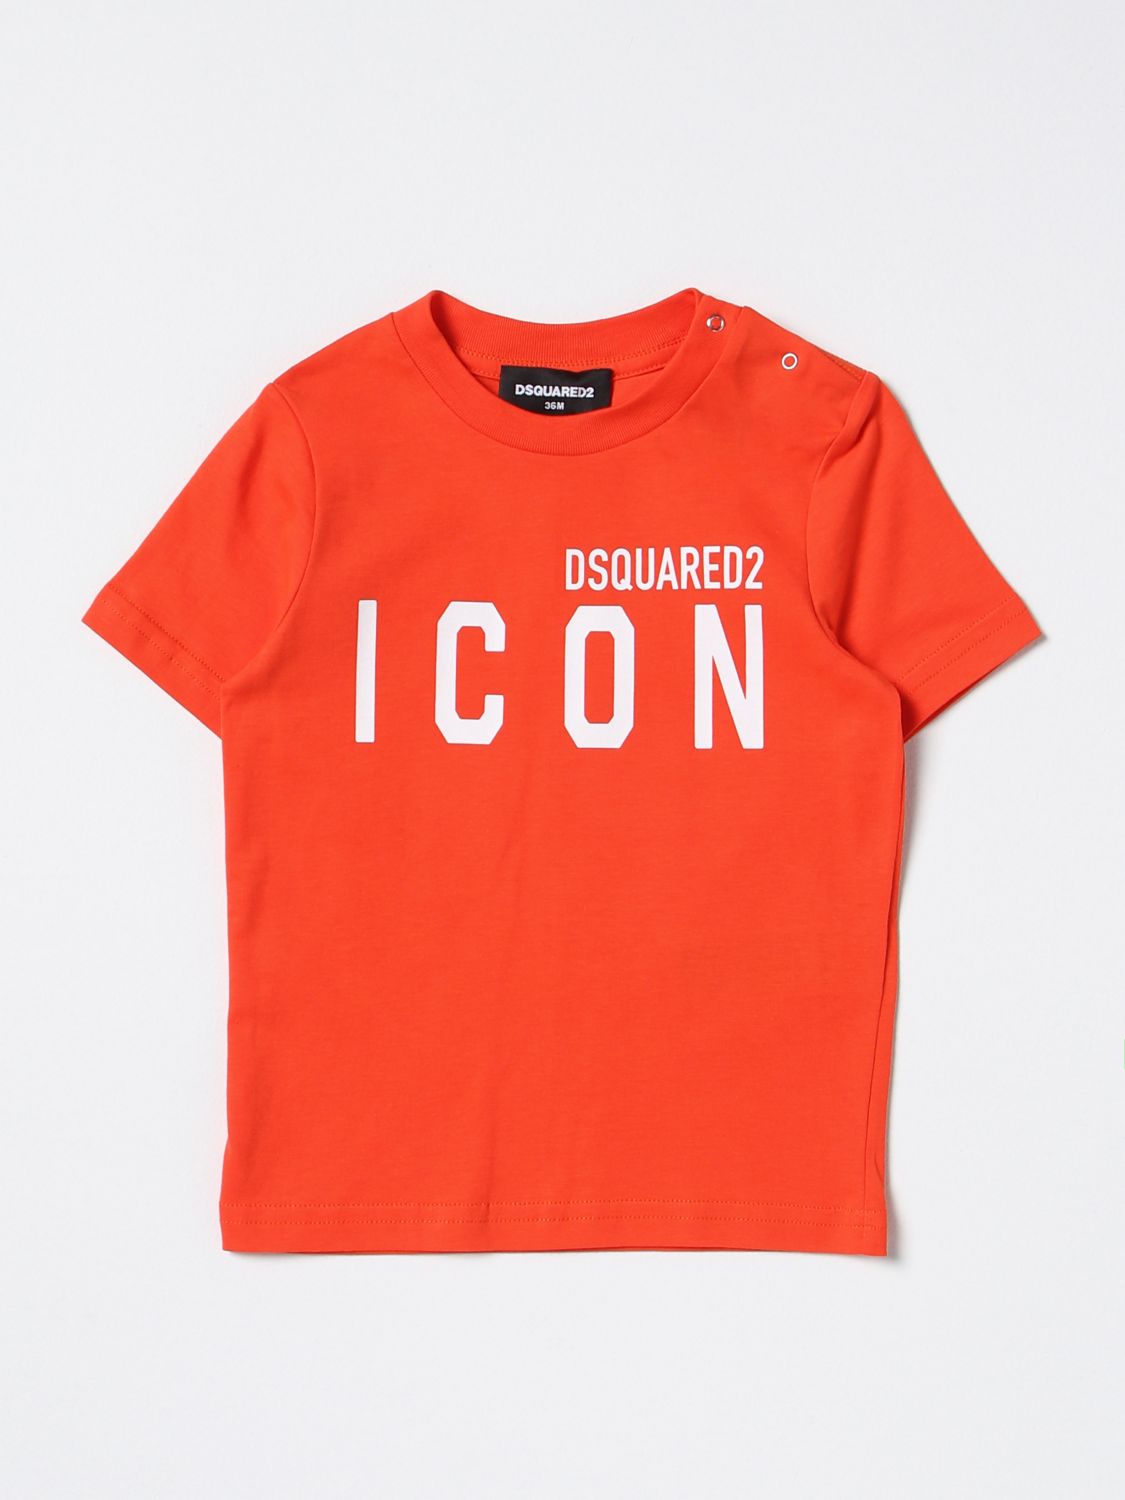 Dsquared2 Junior Babies' T-shirt  Kids Color Orange